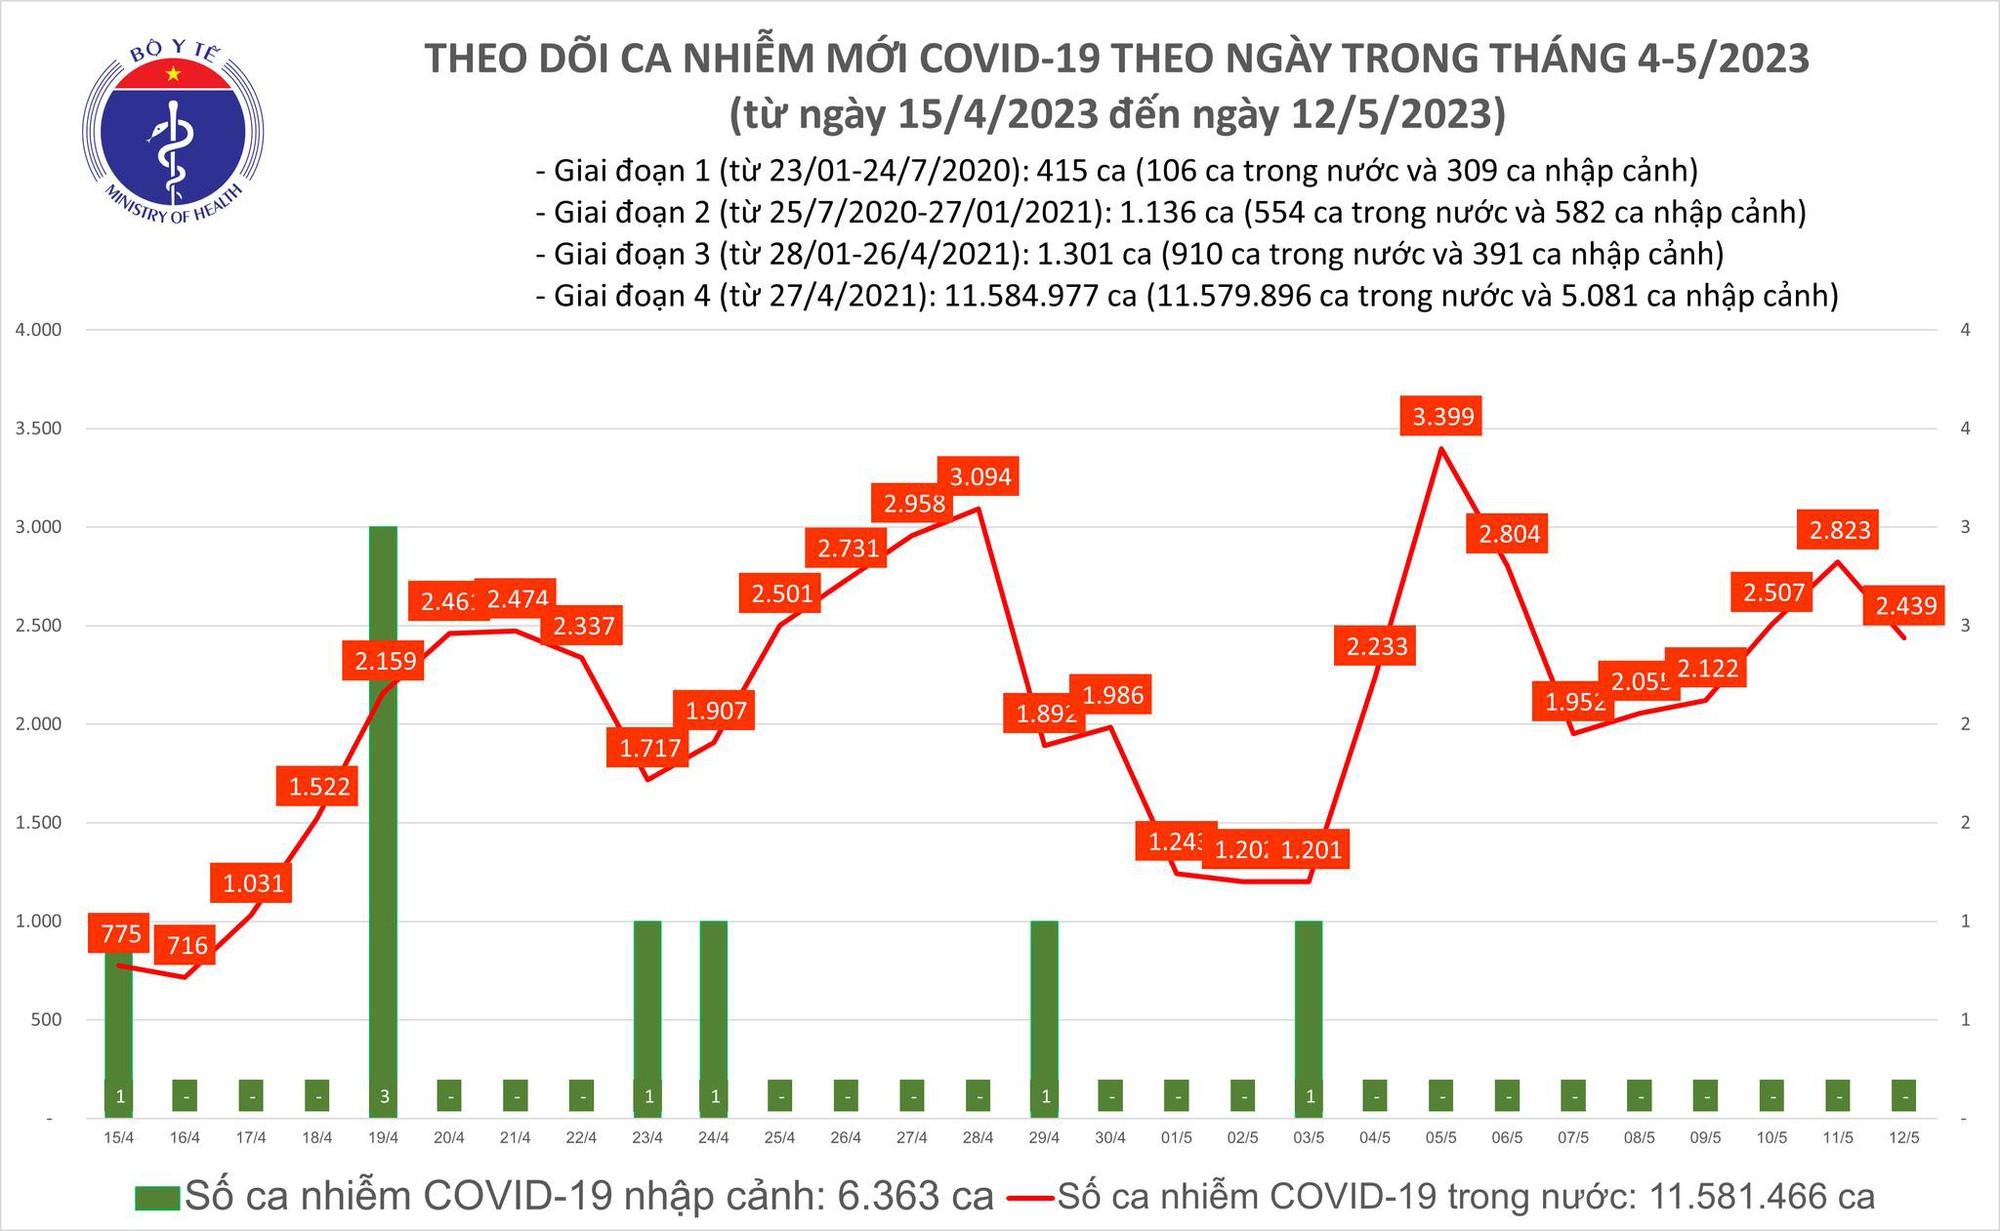 Ngày 12/5: Có 2.439 ca COVID-19 mới, 1 bệnh nhân ở Tây Ninh tử vong - Ảnh 2.